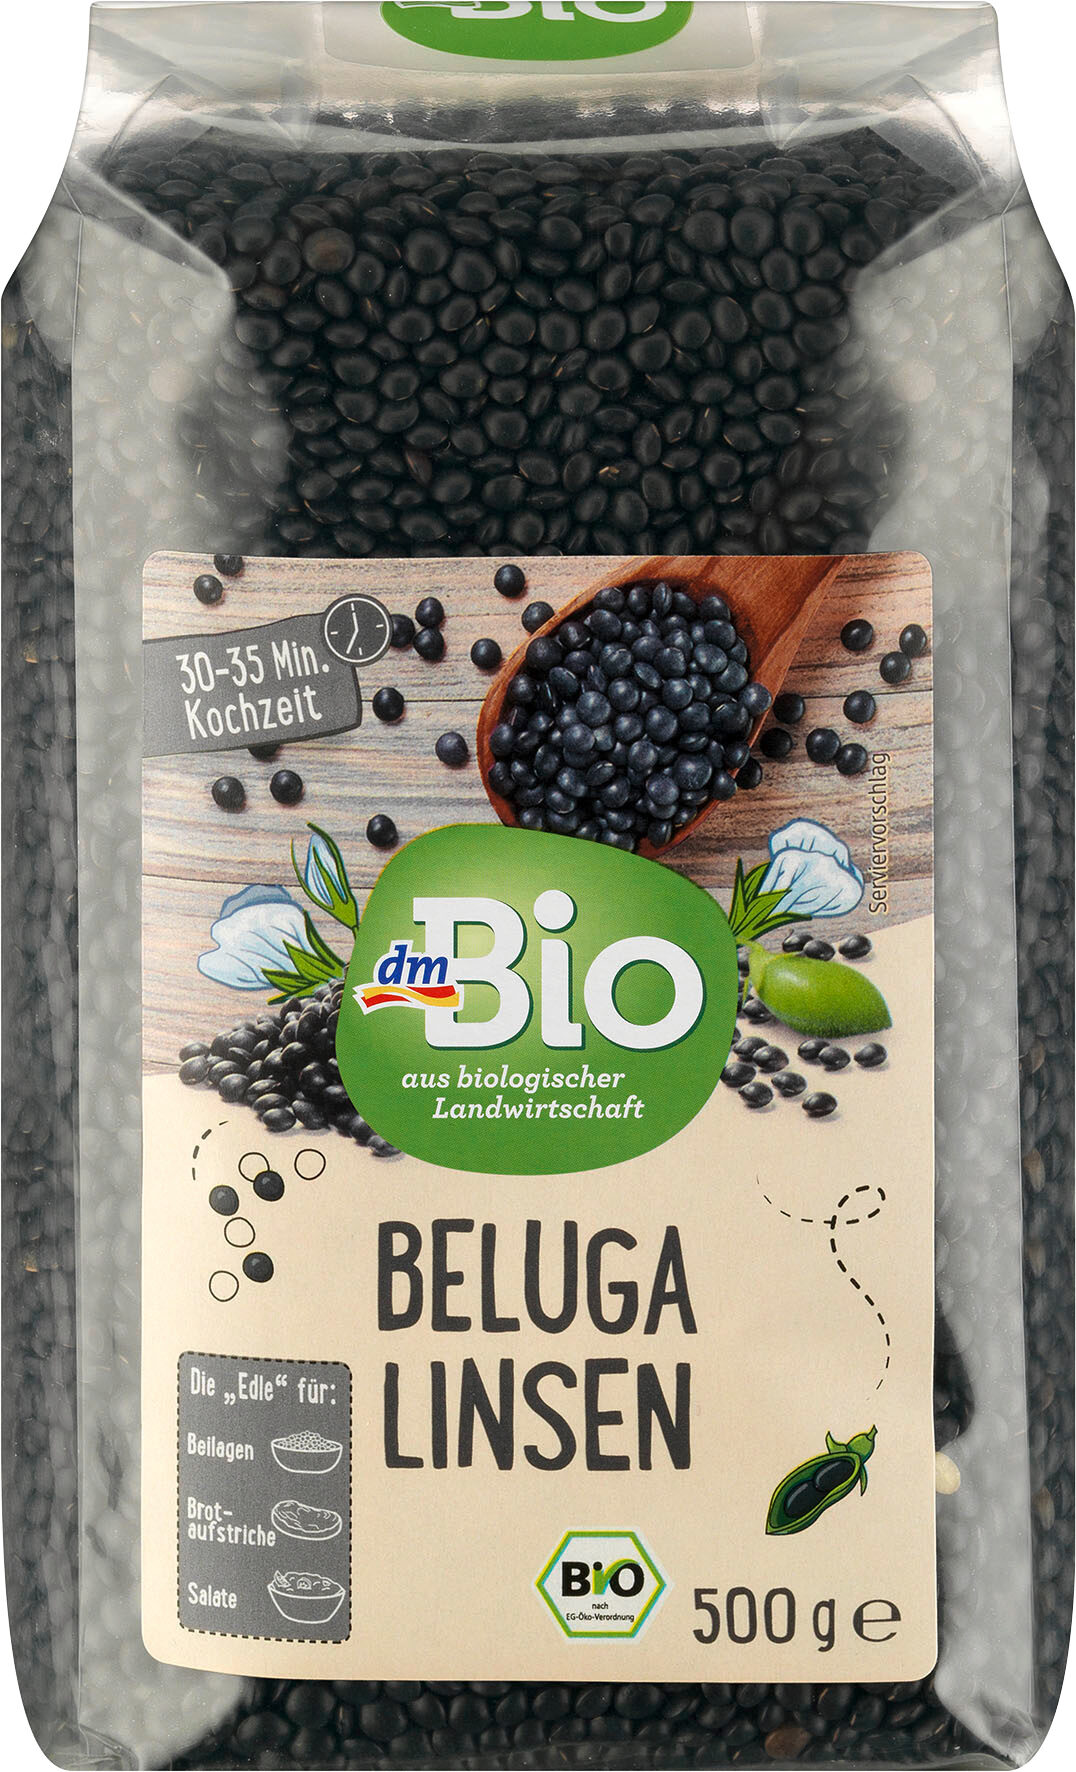 Beluga Linsen - Produkt - de